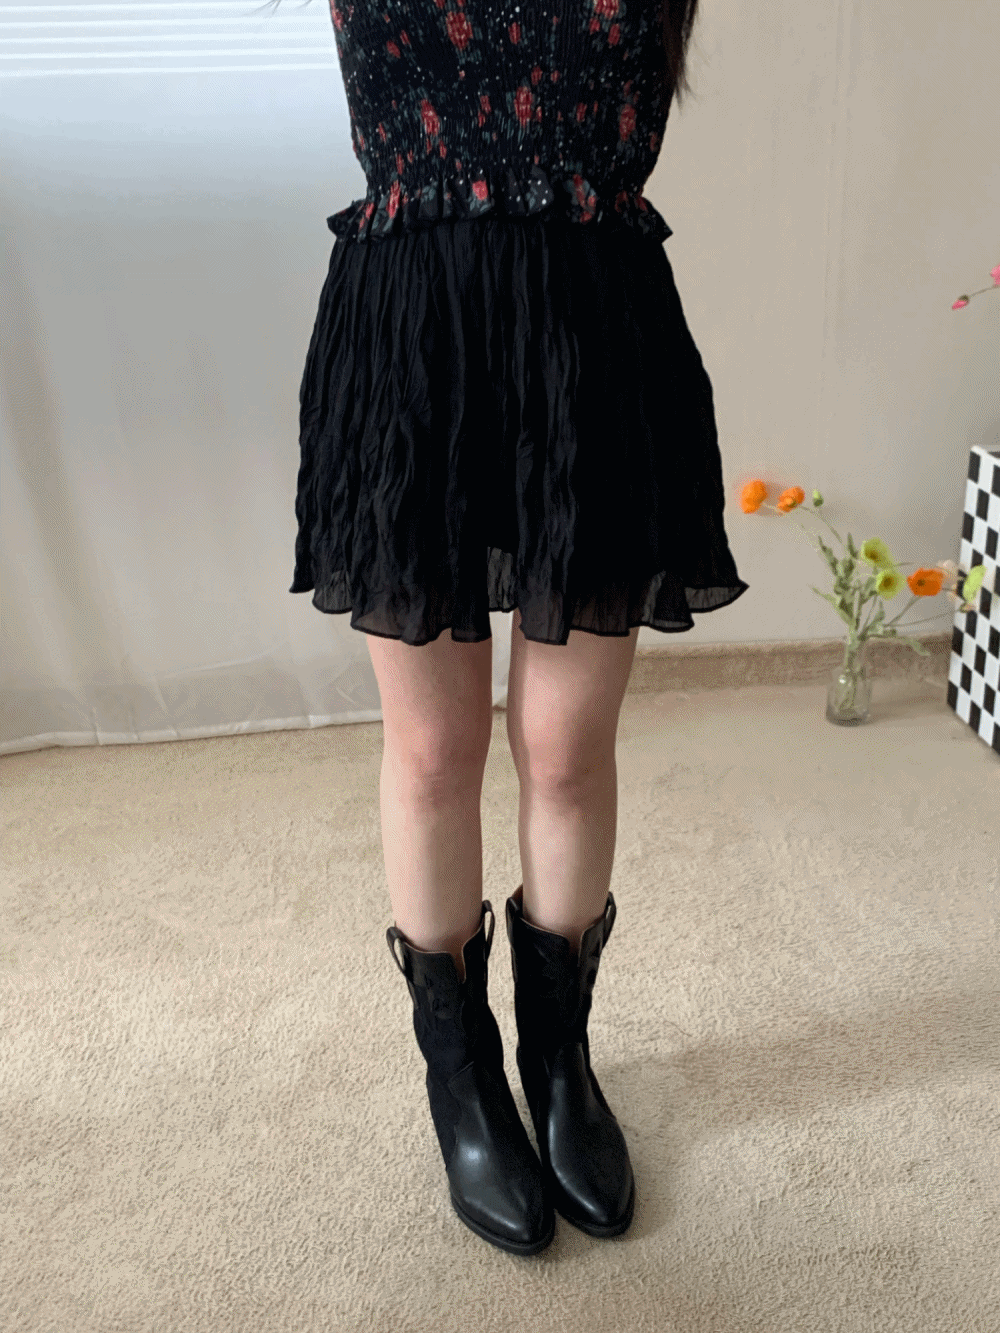 [Skirt] Tinkerbell skirt / 2 colors